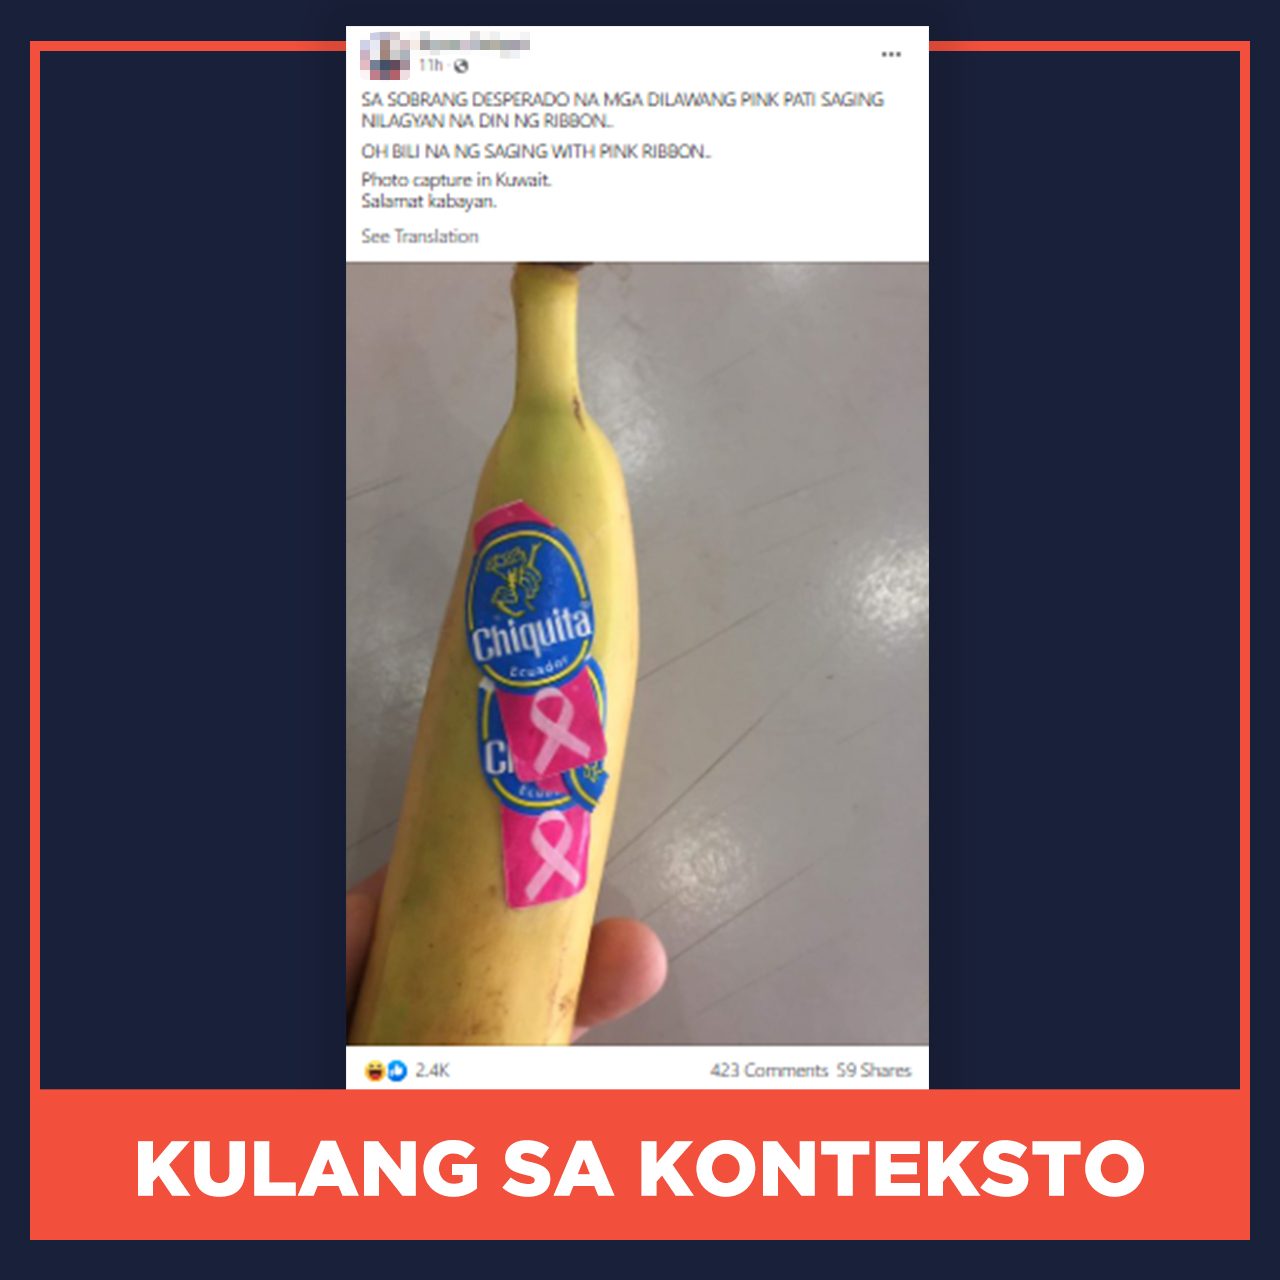 KULANG SA KONTEKSTO: Nilagyan ng mga tagasuporta ni Robredo ng pink sticker ang mga saging